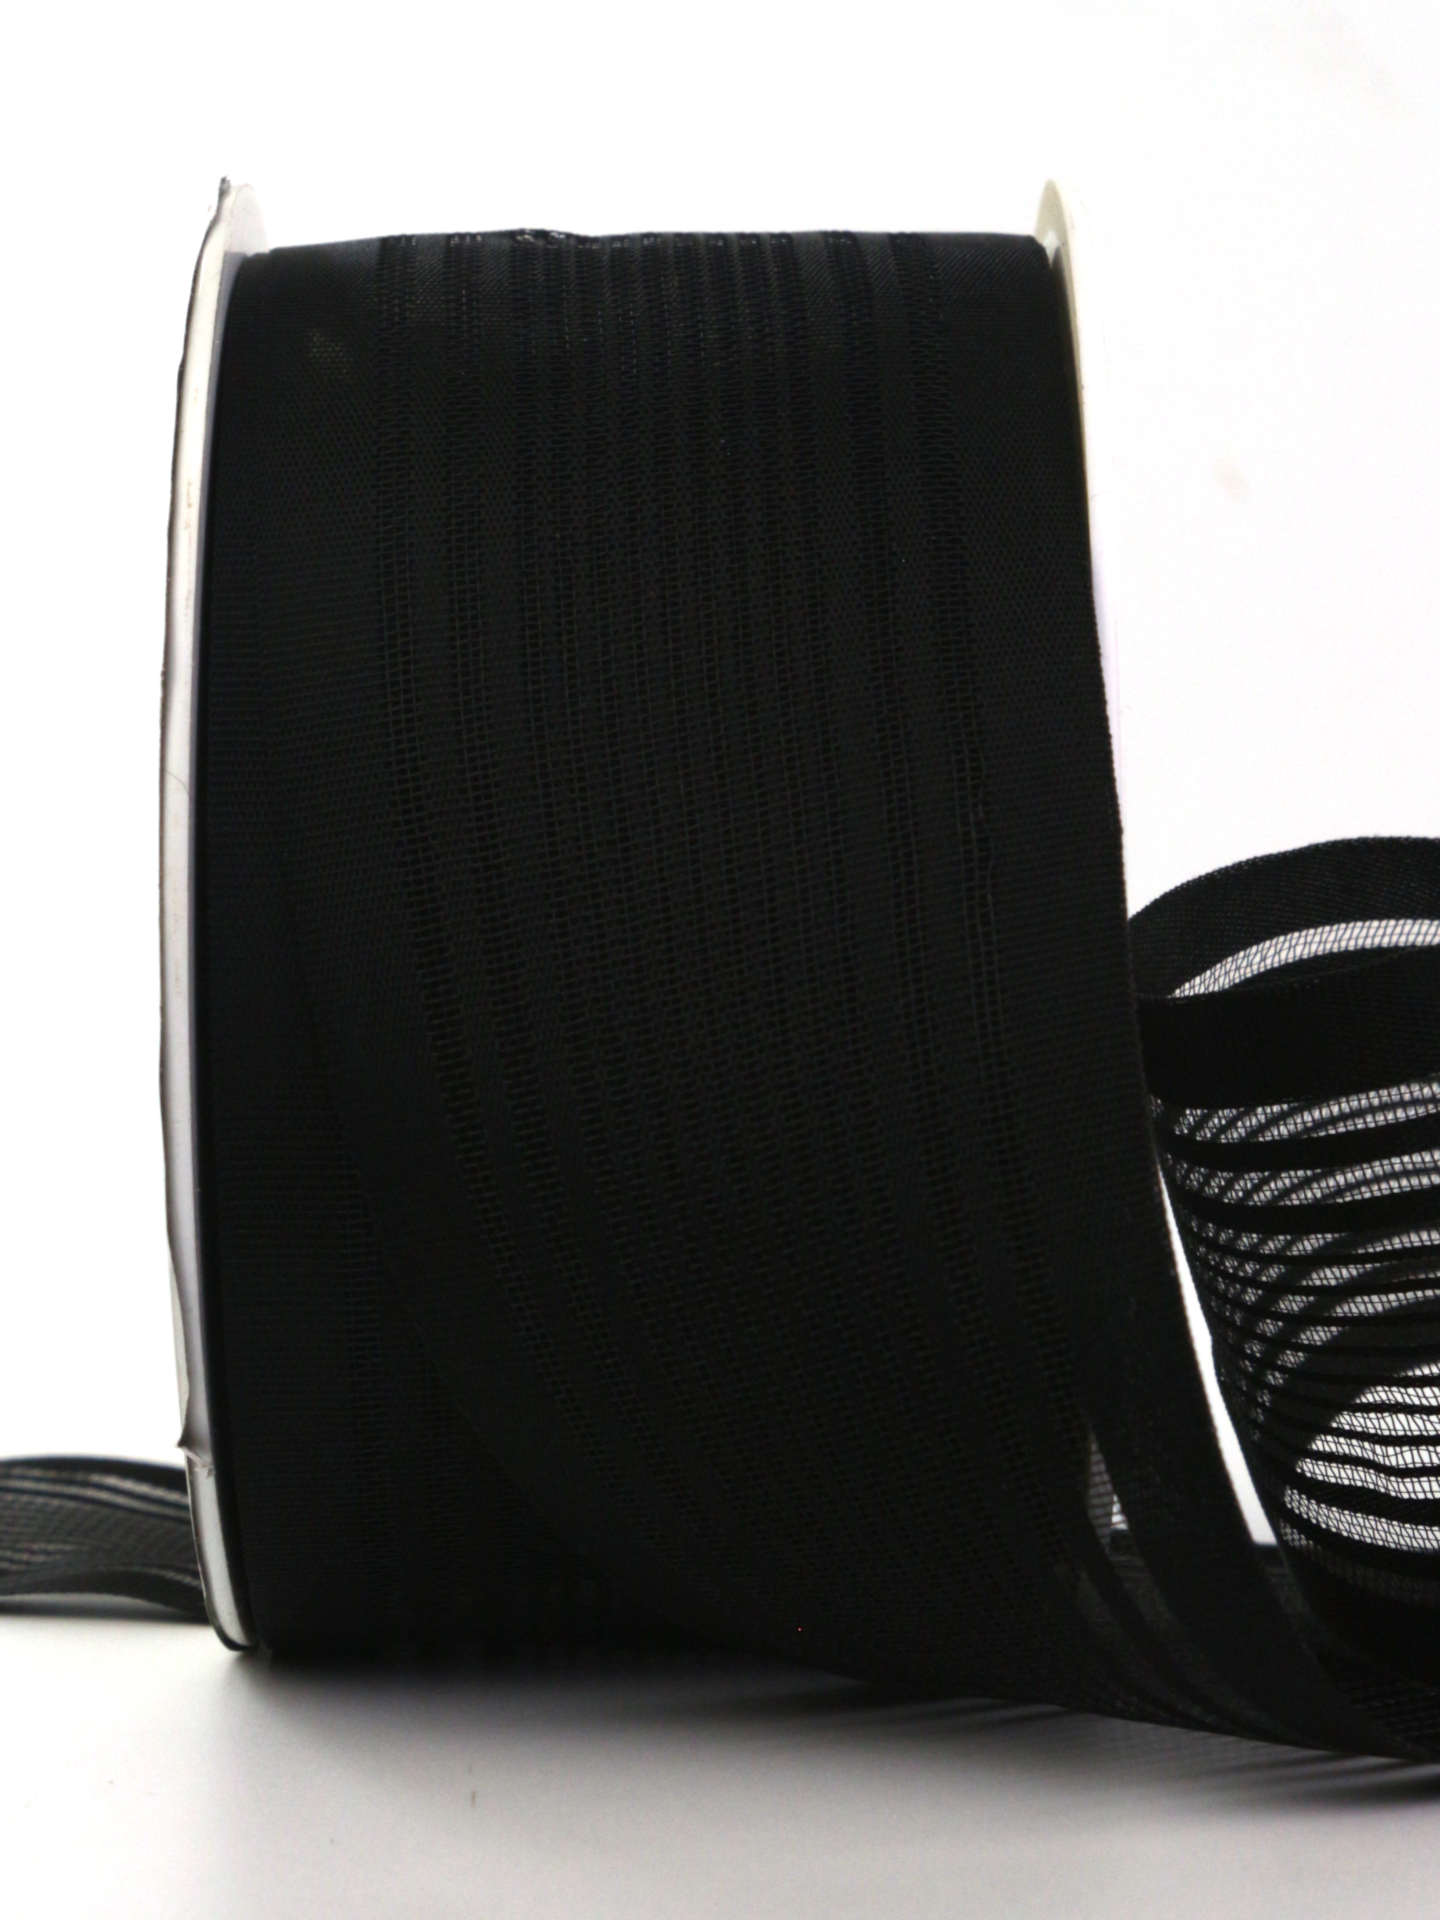 Gestreifter Trauerflor, schwarz, 50 mm breit, 25 m Rolle - trauerflor, trauerband